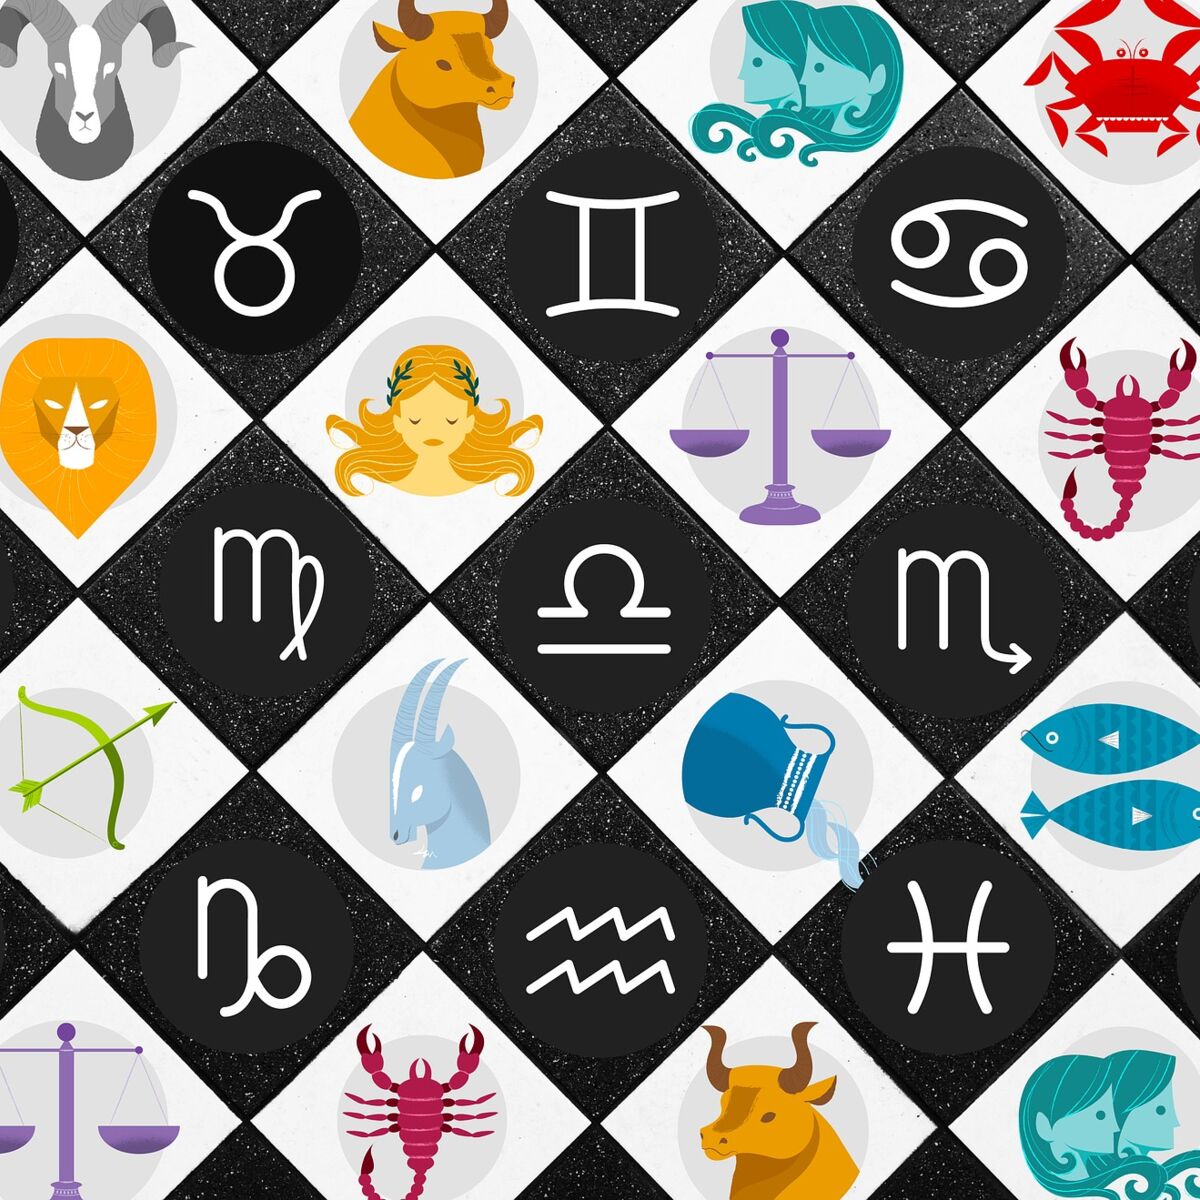 Jeux à imprimer sur les signes zodiaques Chinois - Les idées du samedi